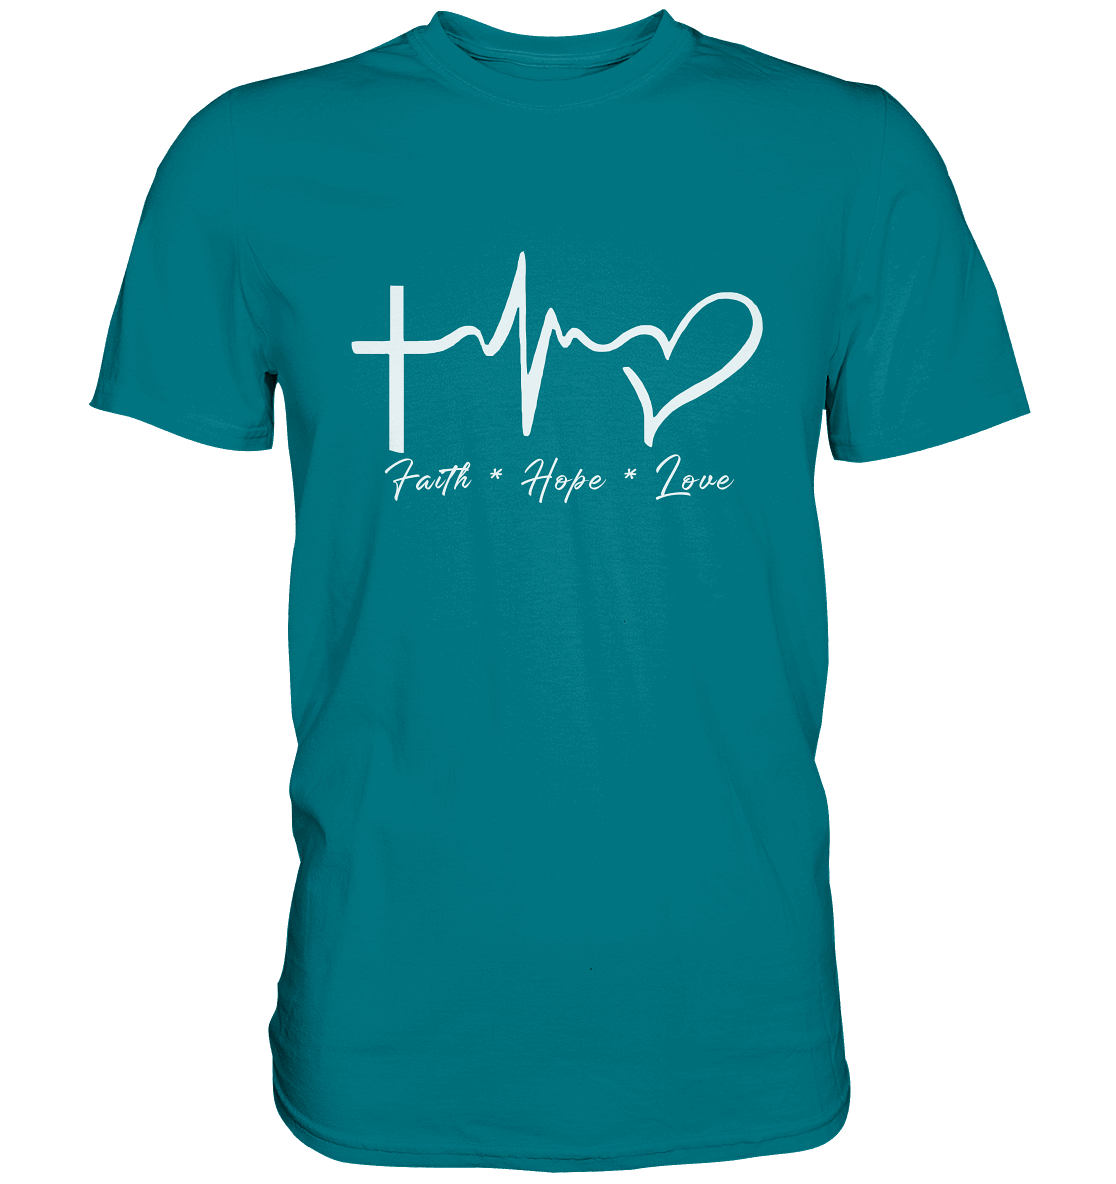 Faith * Hope * Love - Premium Shirt